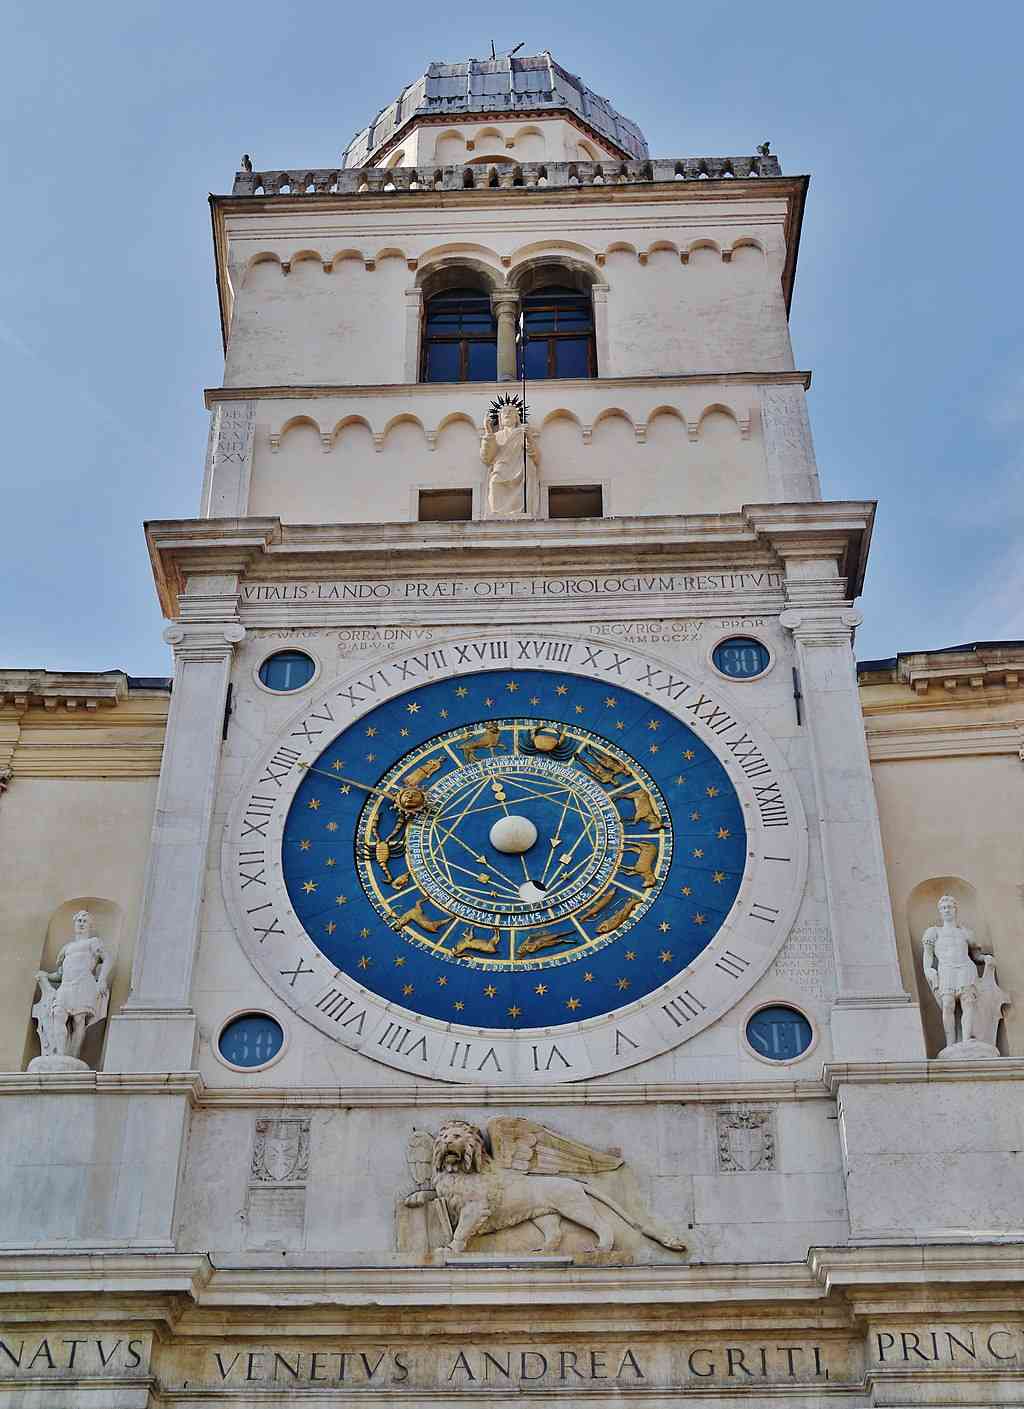 Clock Tower in Piazza dell'Orologio